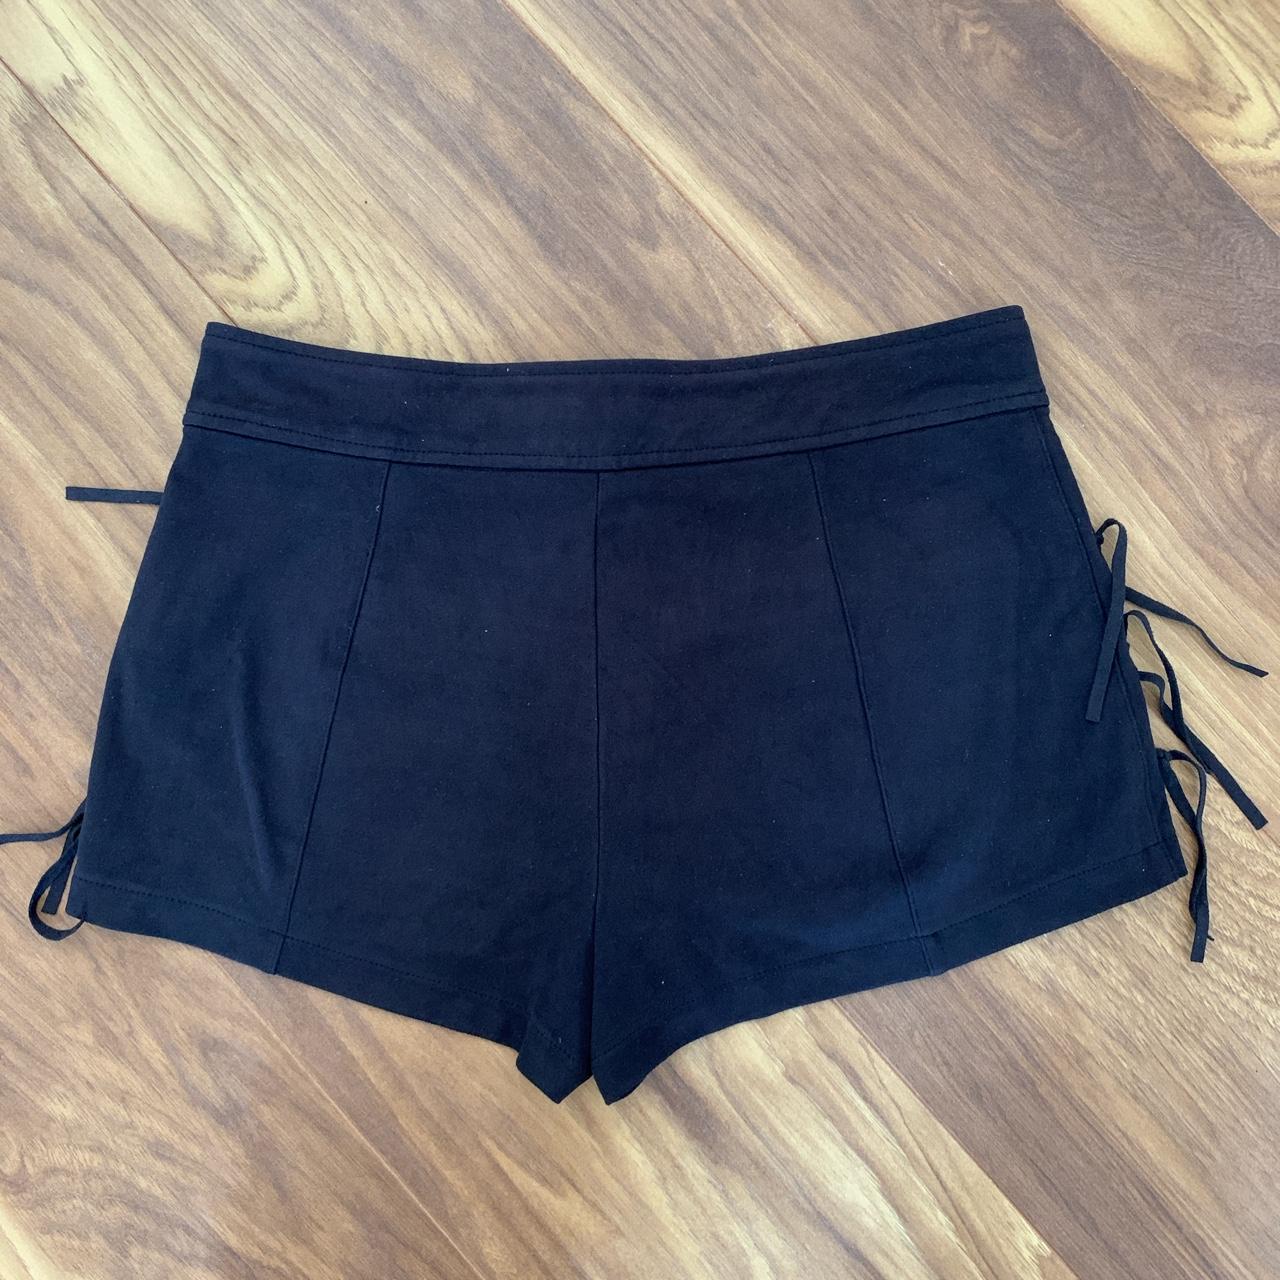 Zara Suede shorts Fringe sides Size S Large front... - Depop